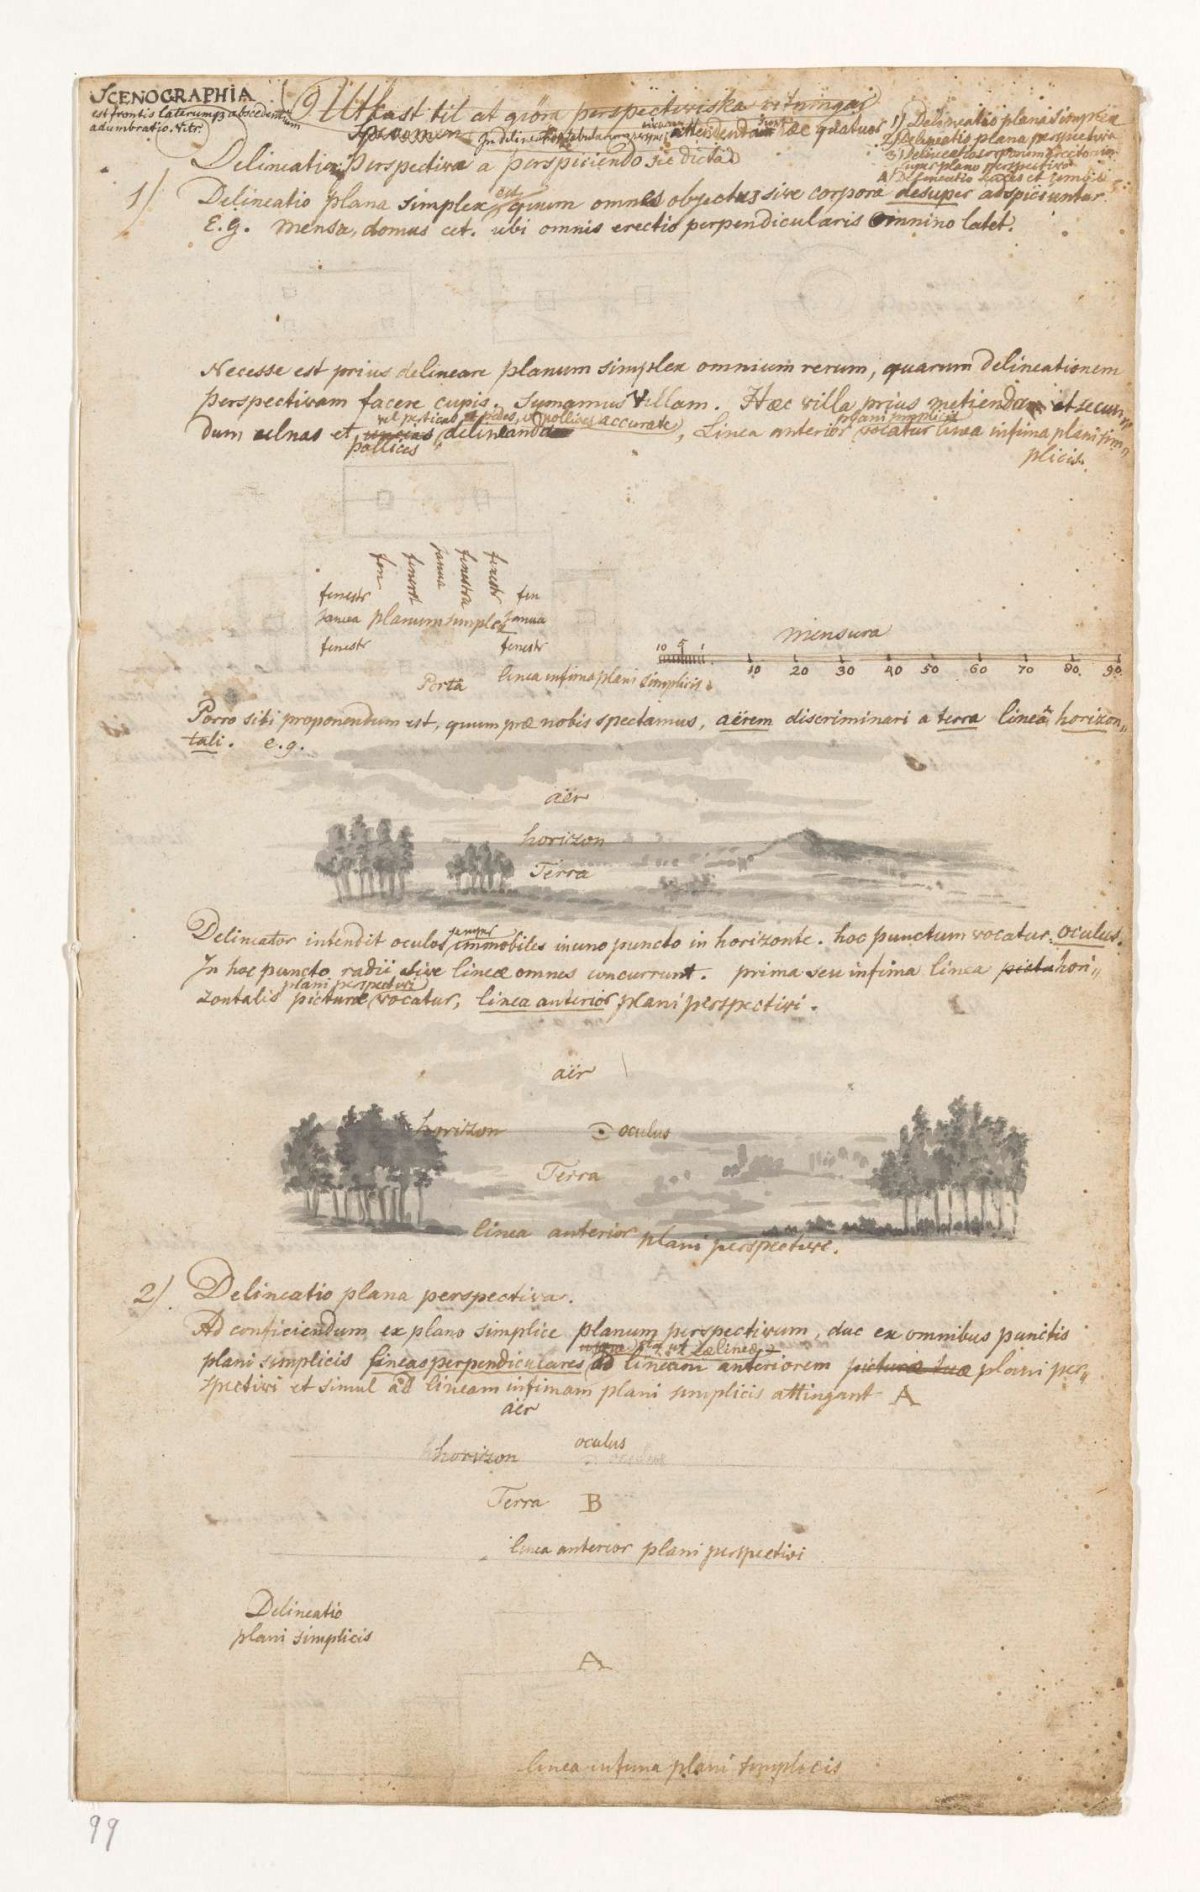 Scenographia of perspectiefleer, Jan Brandes, 1787 - 1808